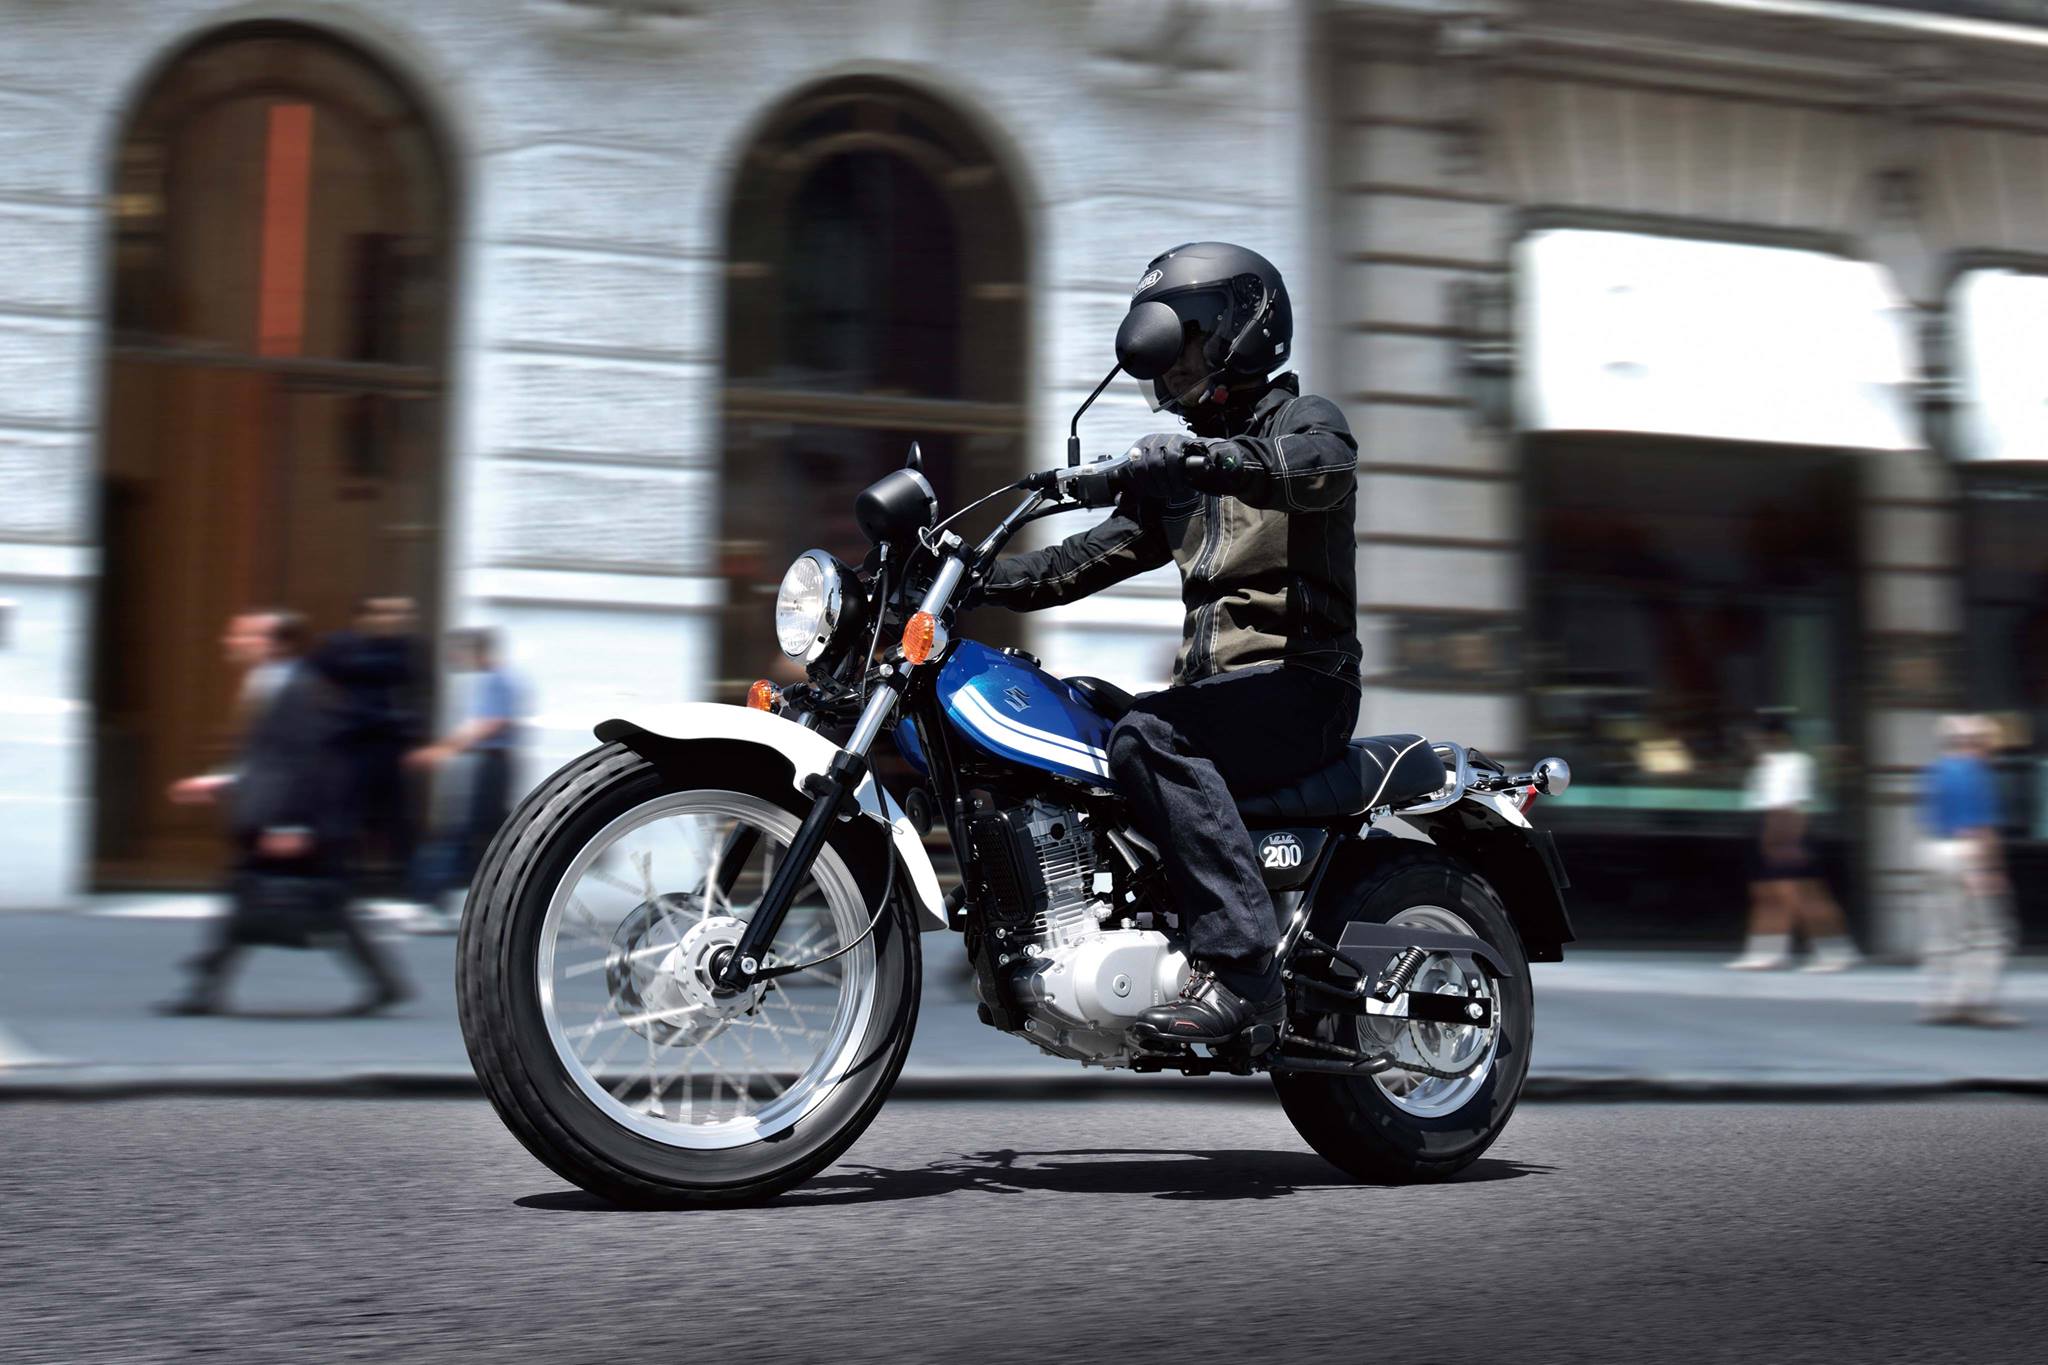 Mẫu xe côn tay Vanvan 200cc phong cách Scrambler giá rẻ của Suzuki